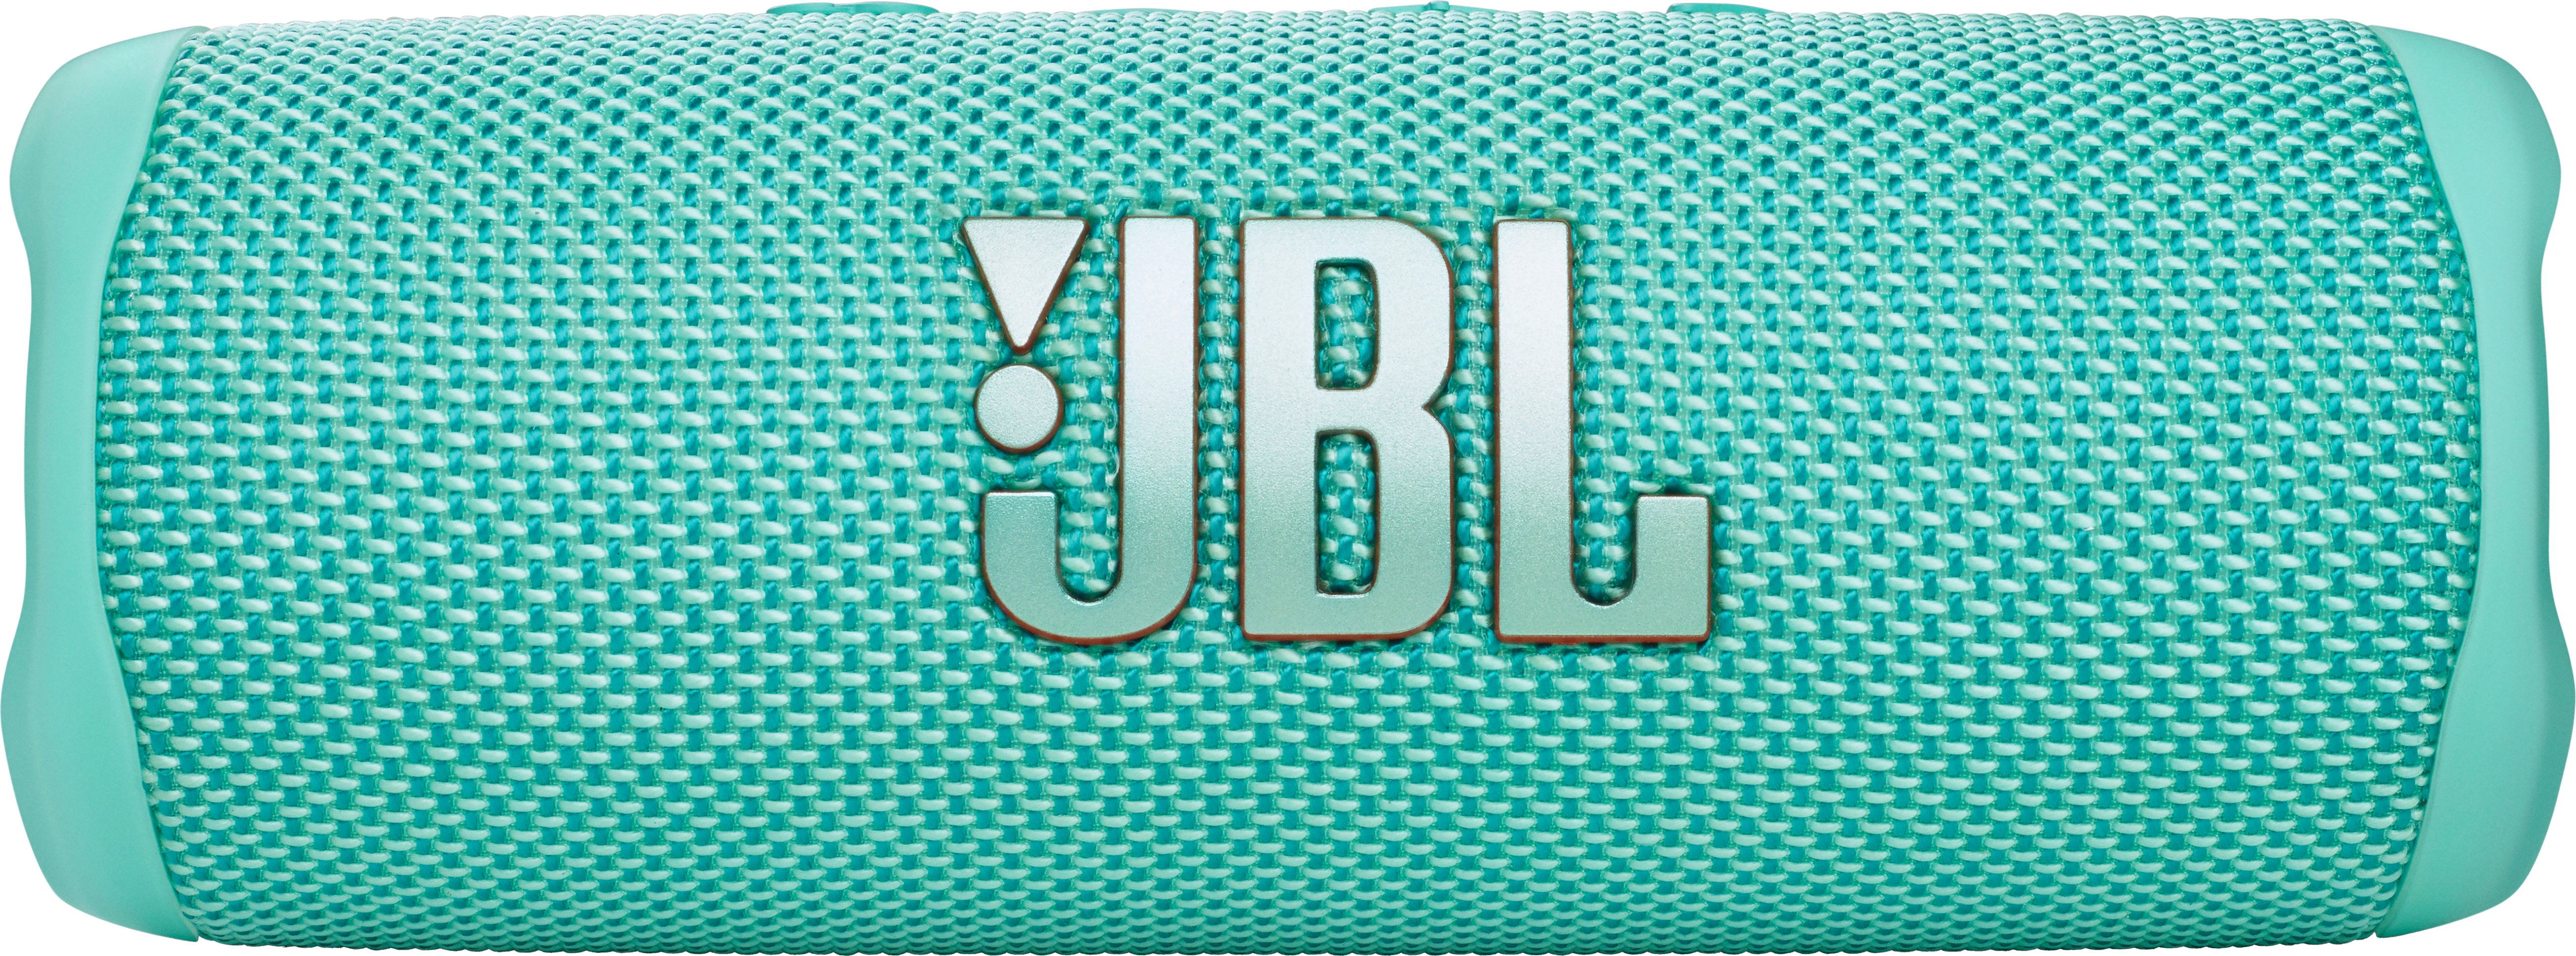 Speaker Portable JBL JBLFLIP6TEALAM Buy Waterproof Best Teal FLIP6 -